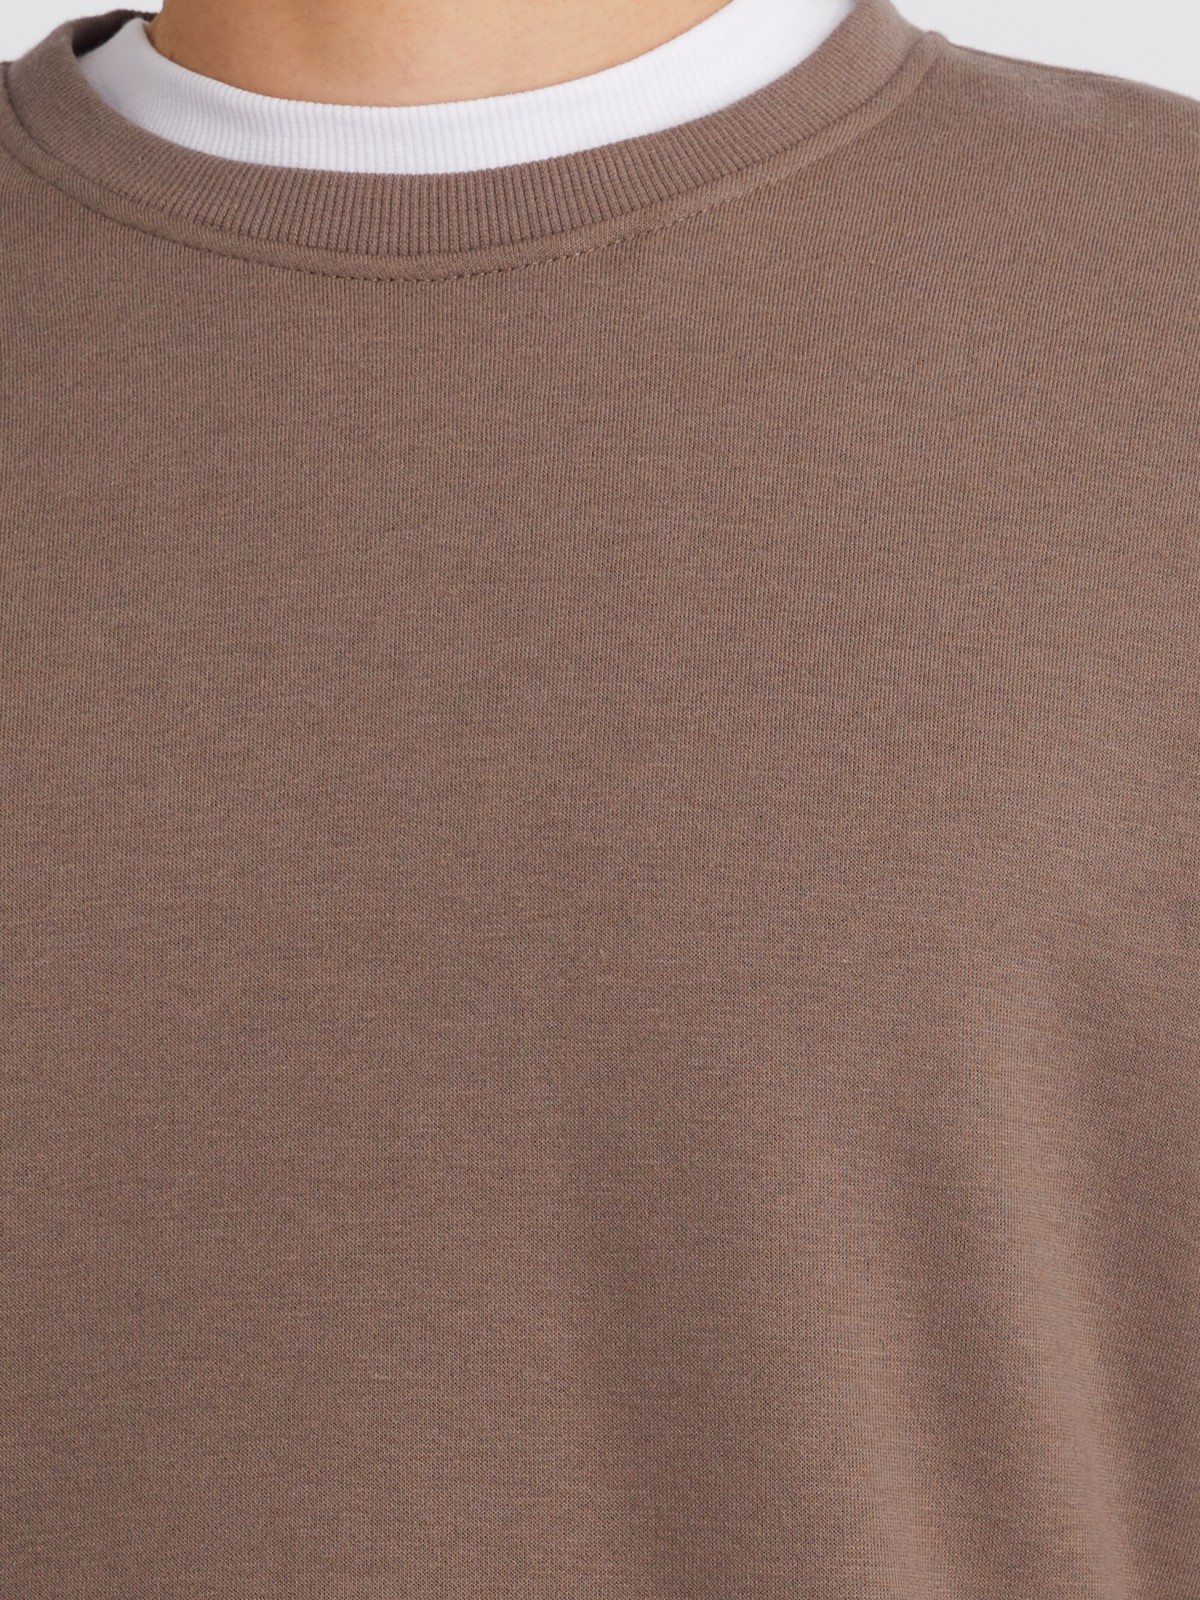 Утеплённый свитшот прямого кроя с длинным рукавом zolla 213324179032, цвет коричневый, размер S - фото 4